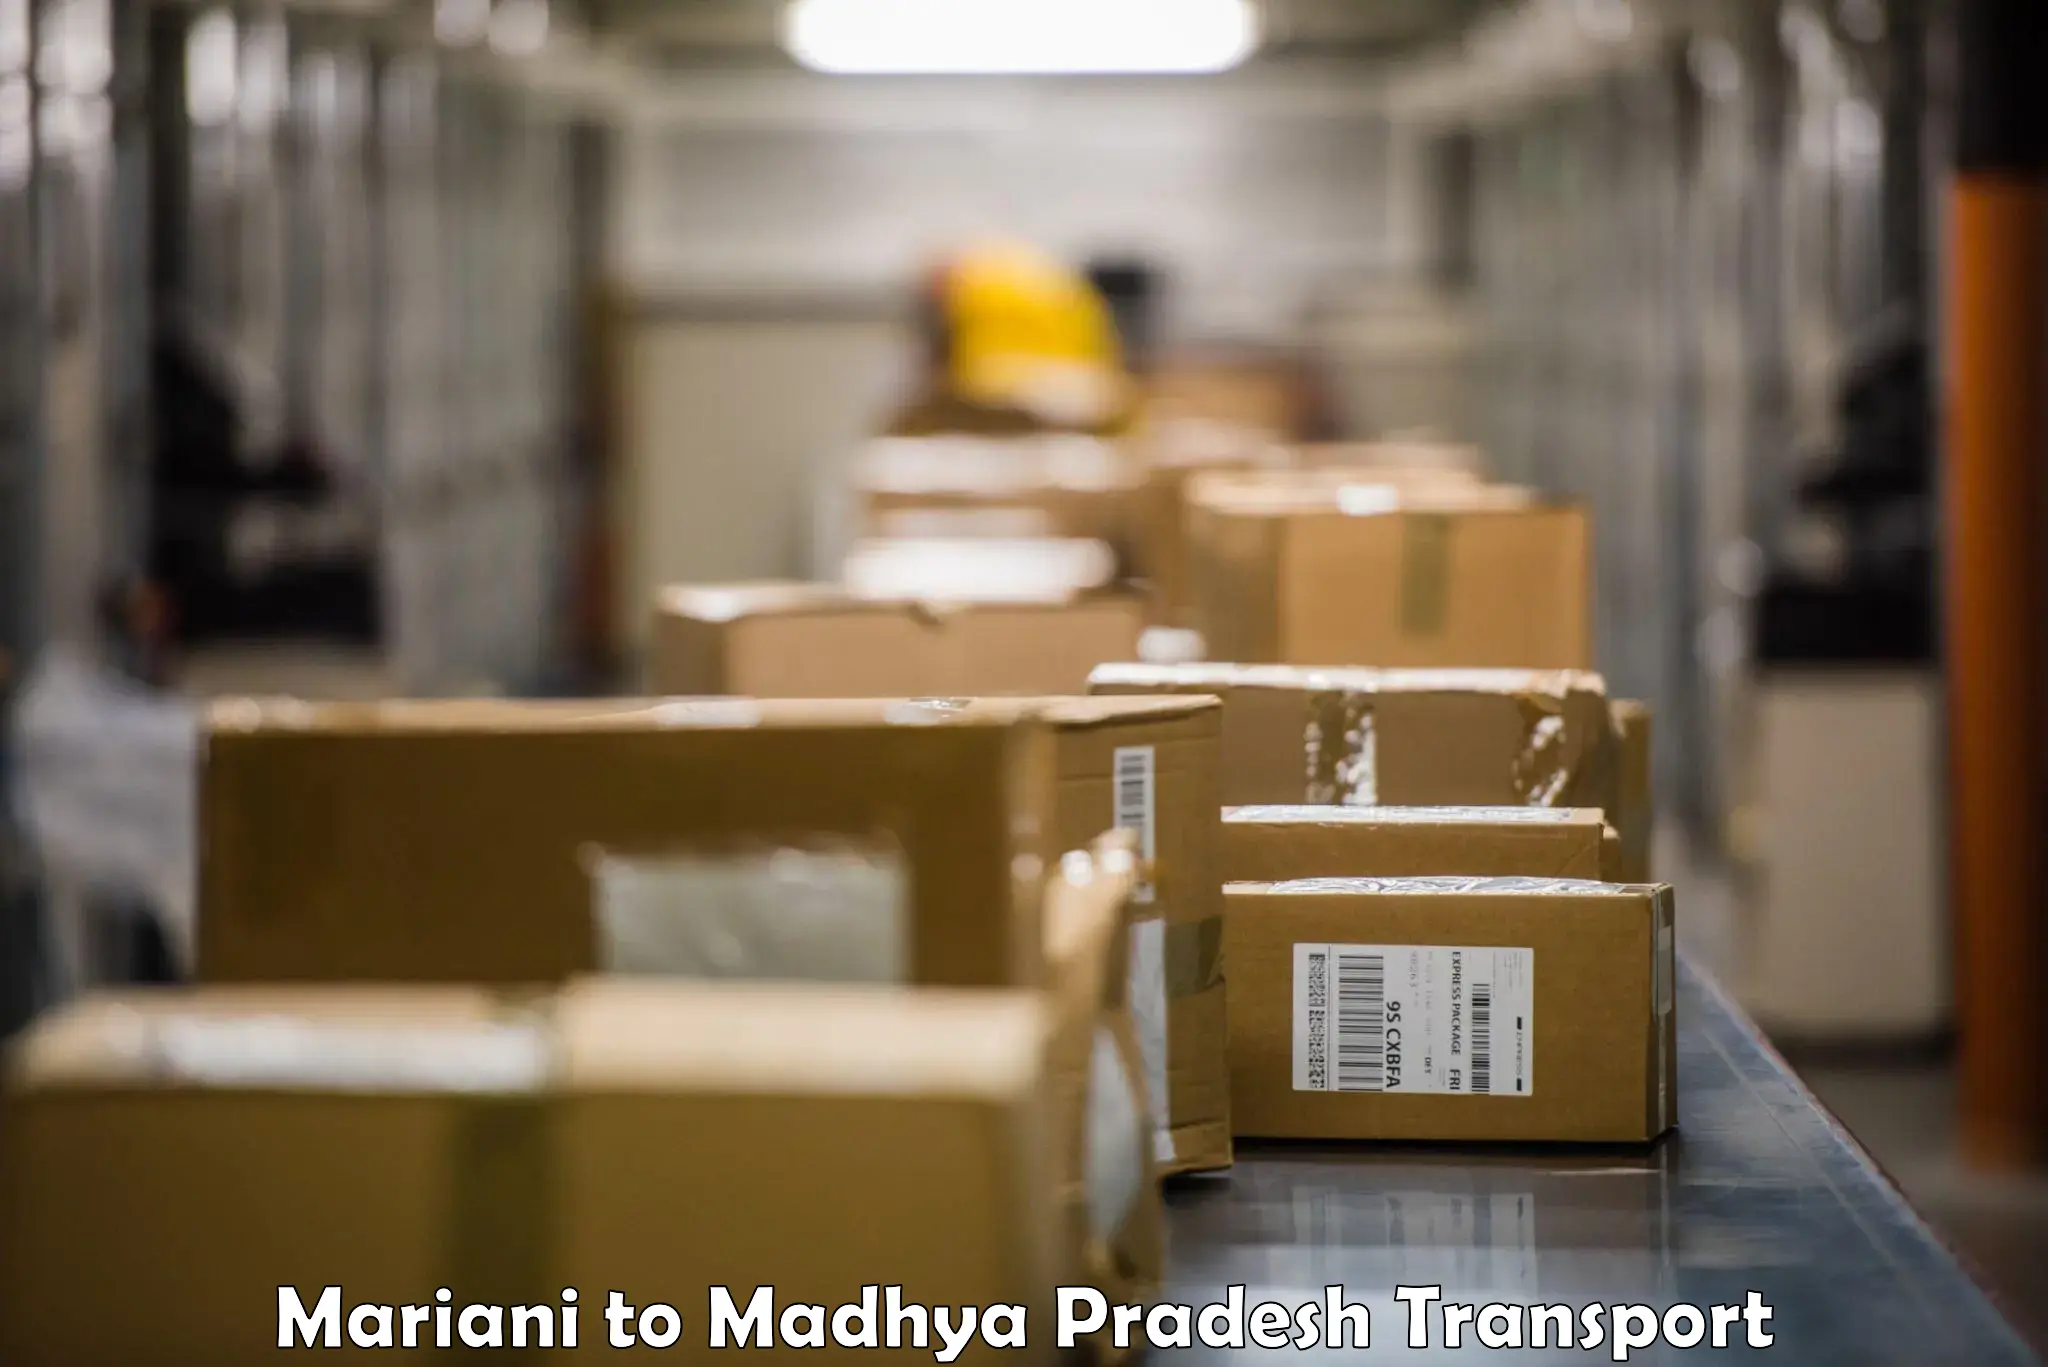 Cargo transport services Mariani to Niwari